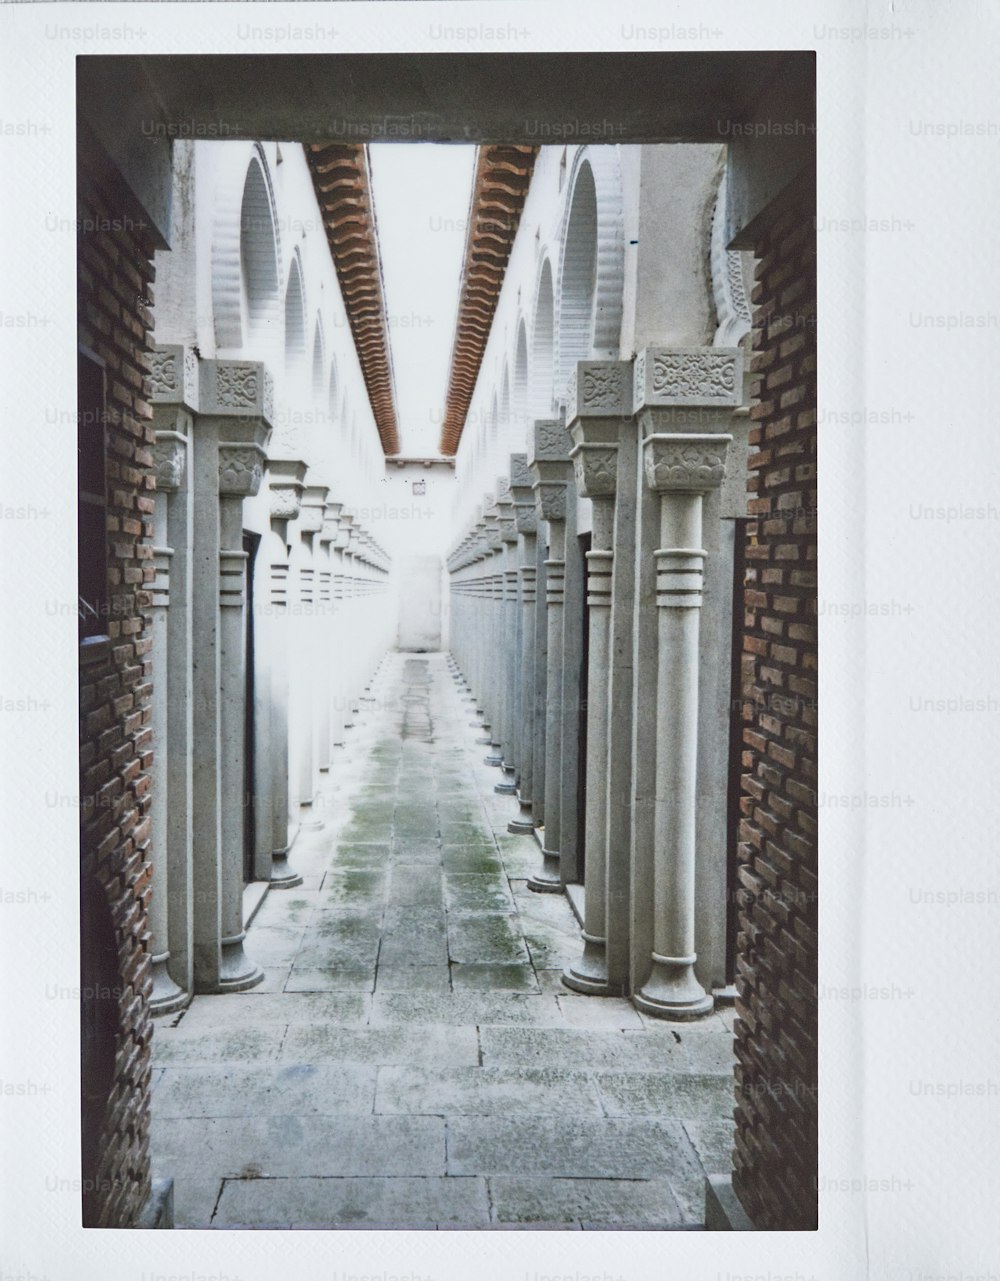 l’image d’une passerelle avec des colonnes et des arches